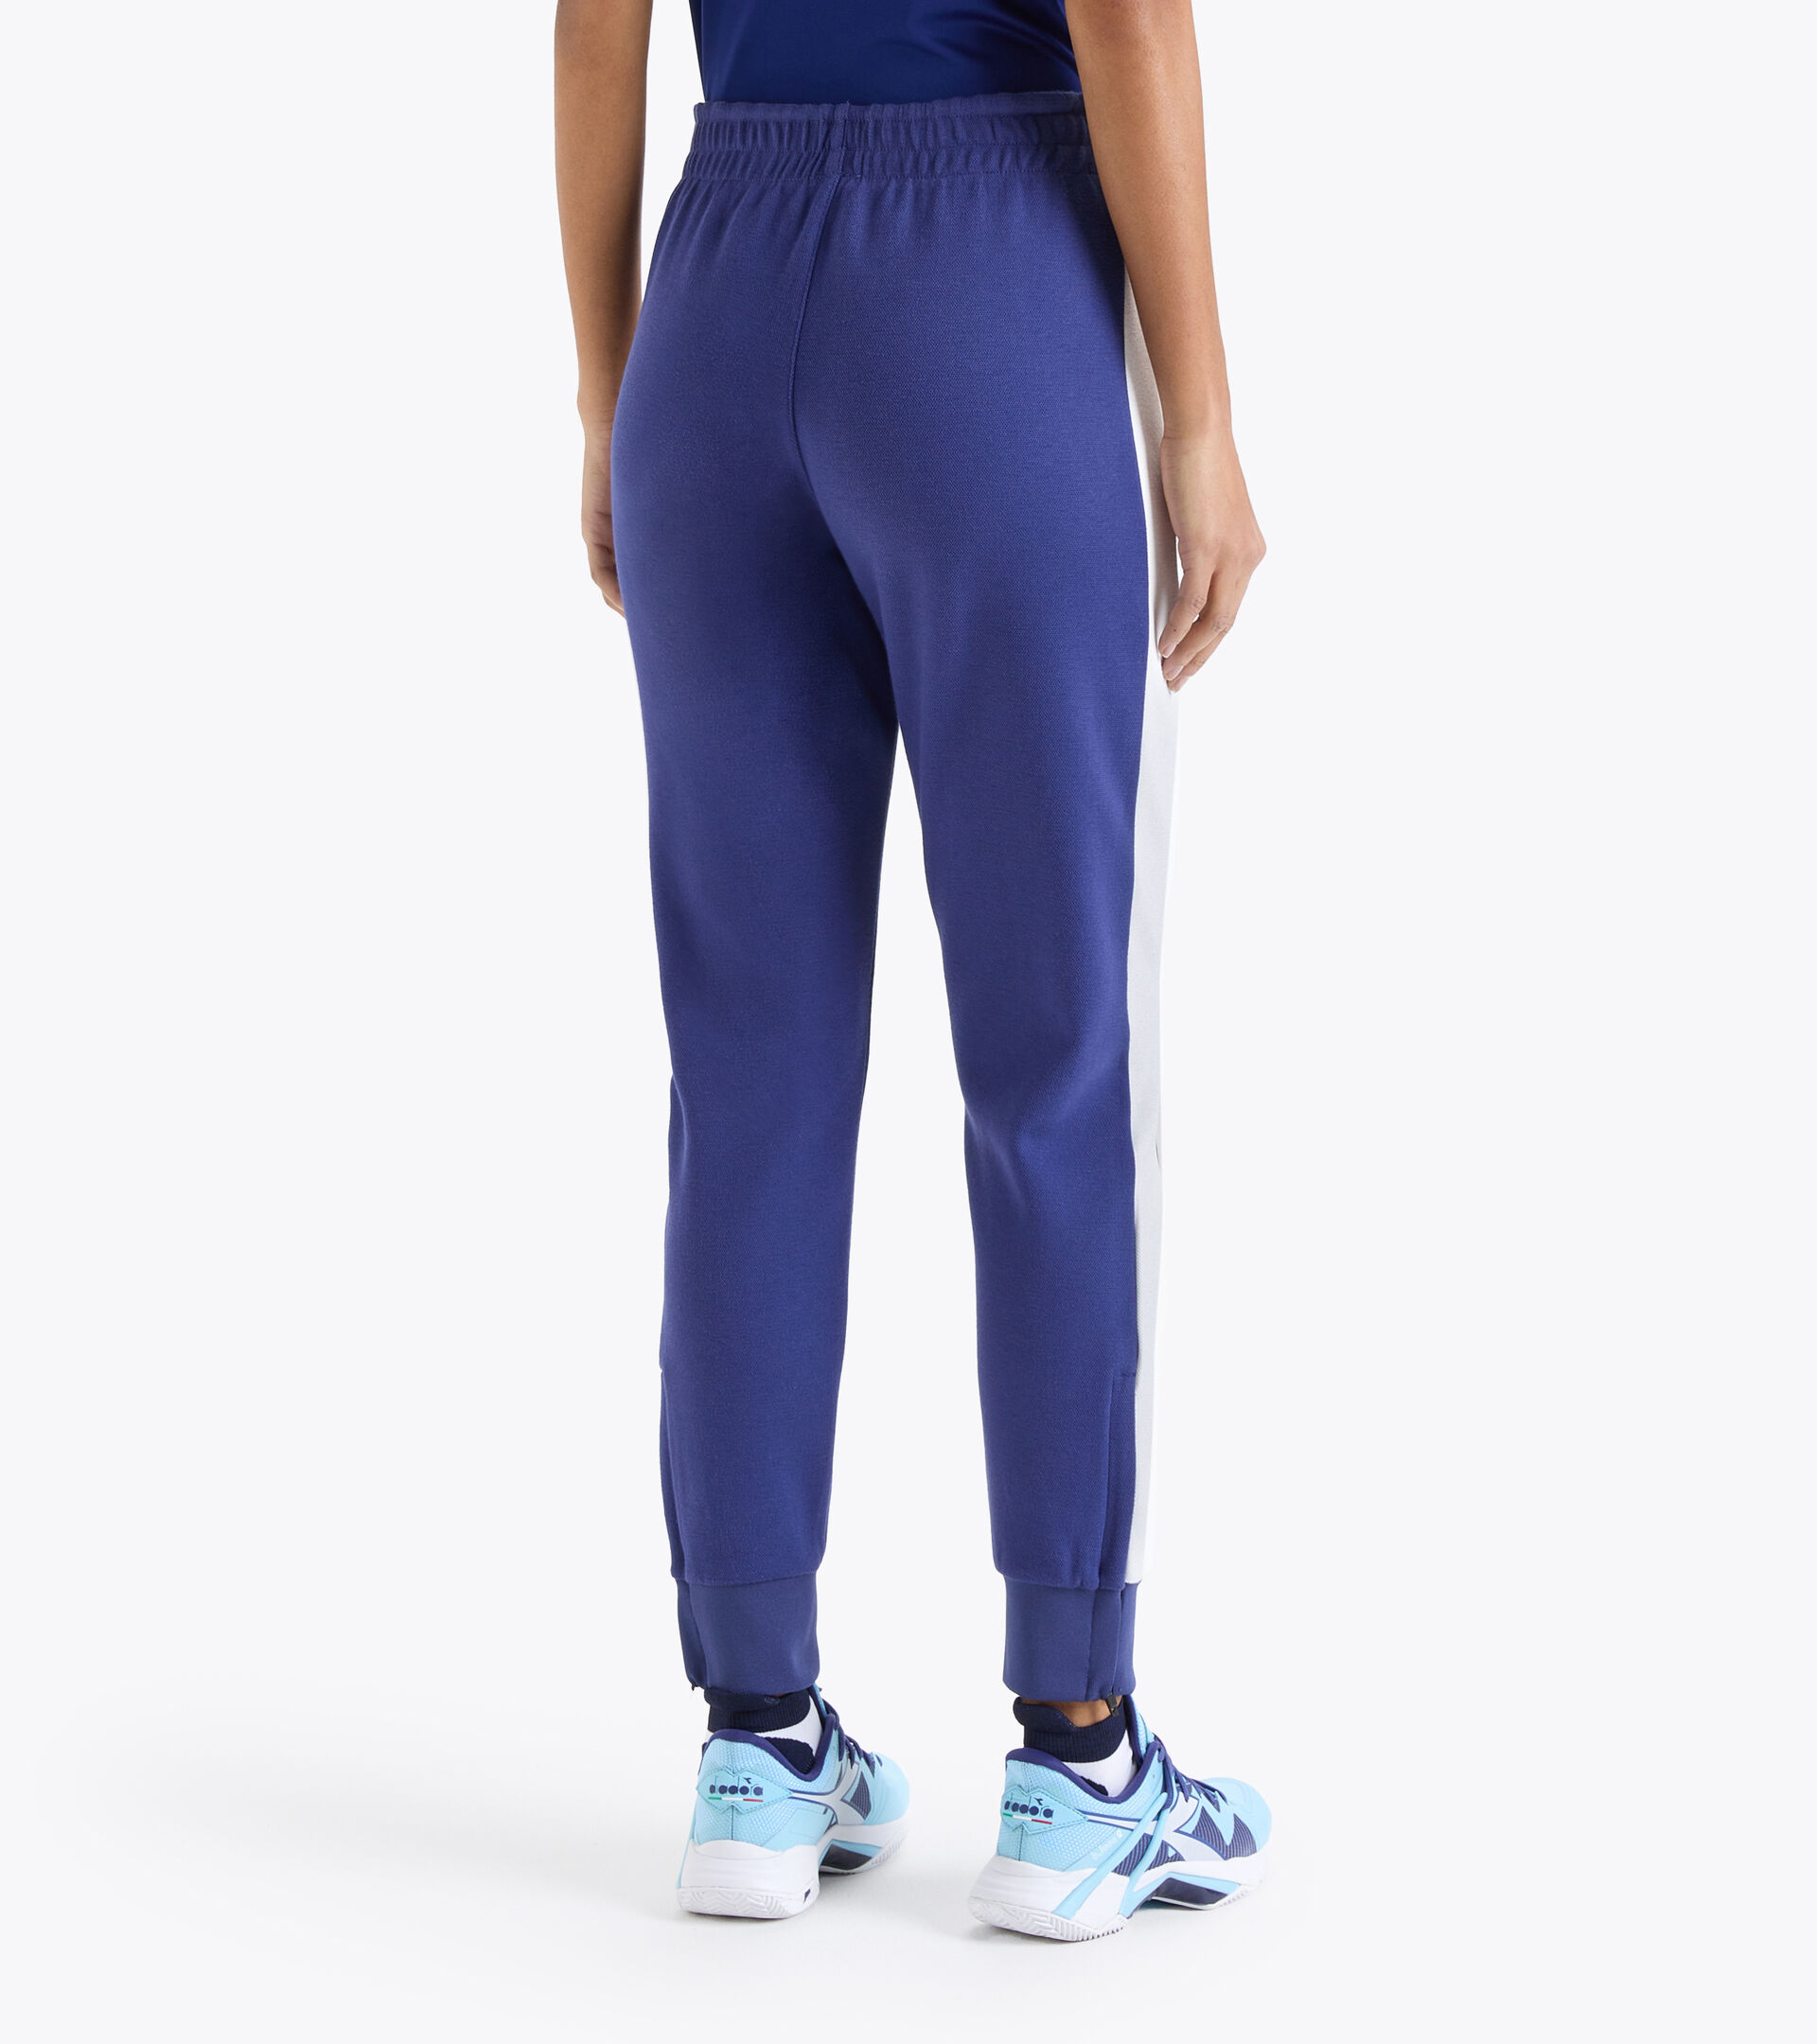 L. PANT COURT Tennis trousers - Women - Diadora Online Store